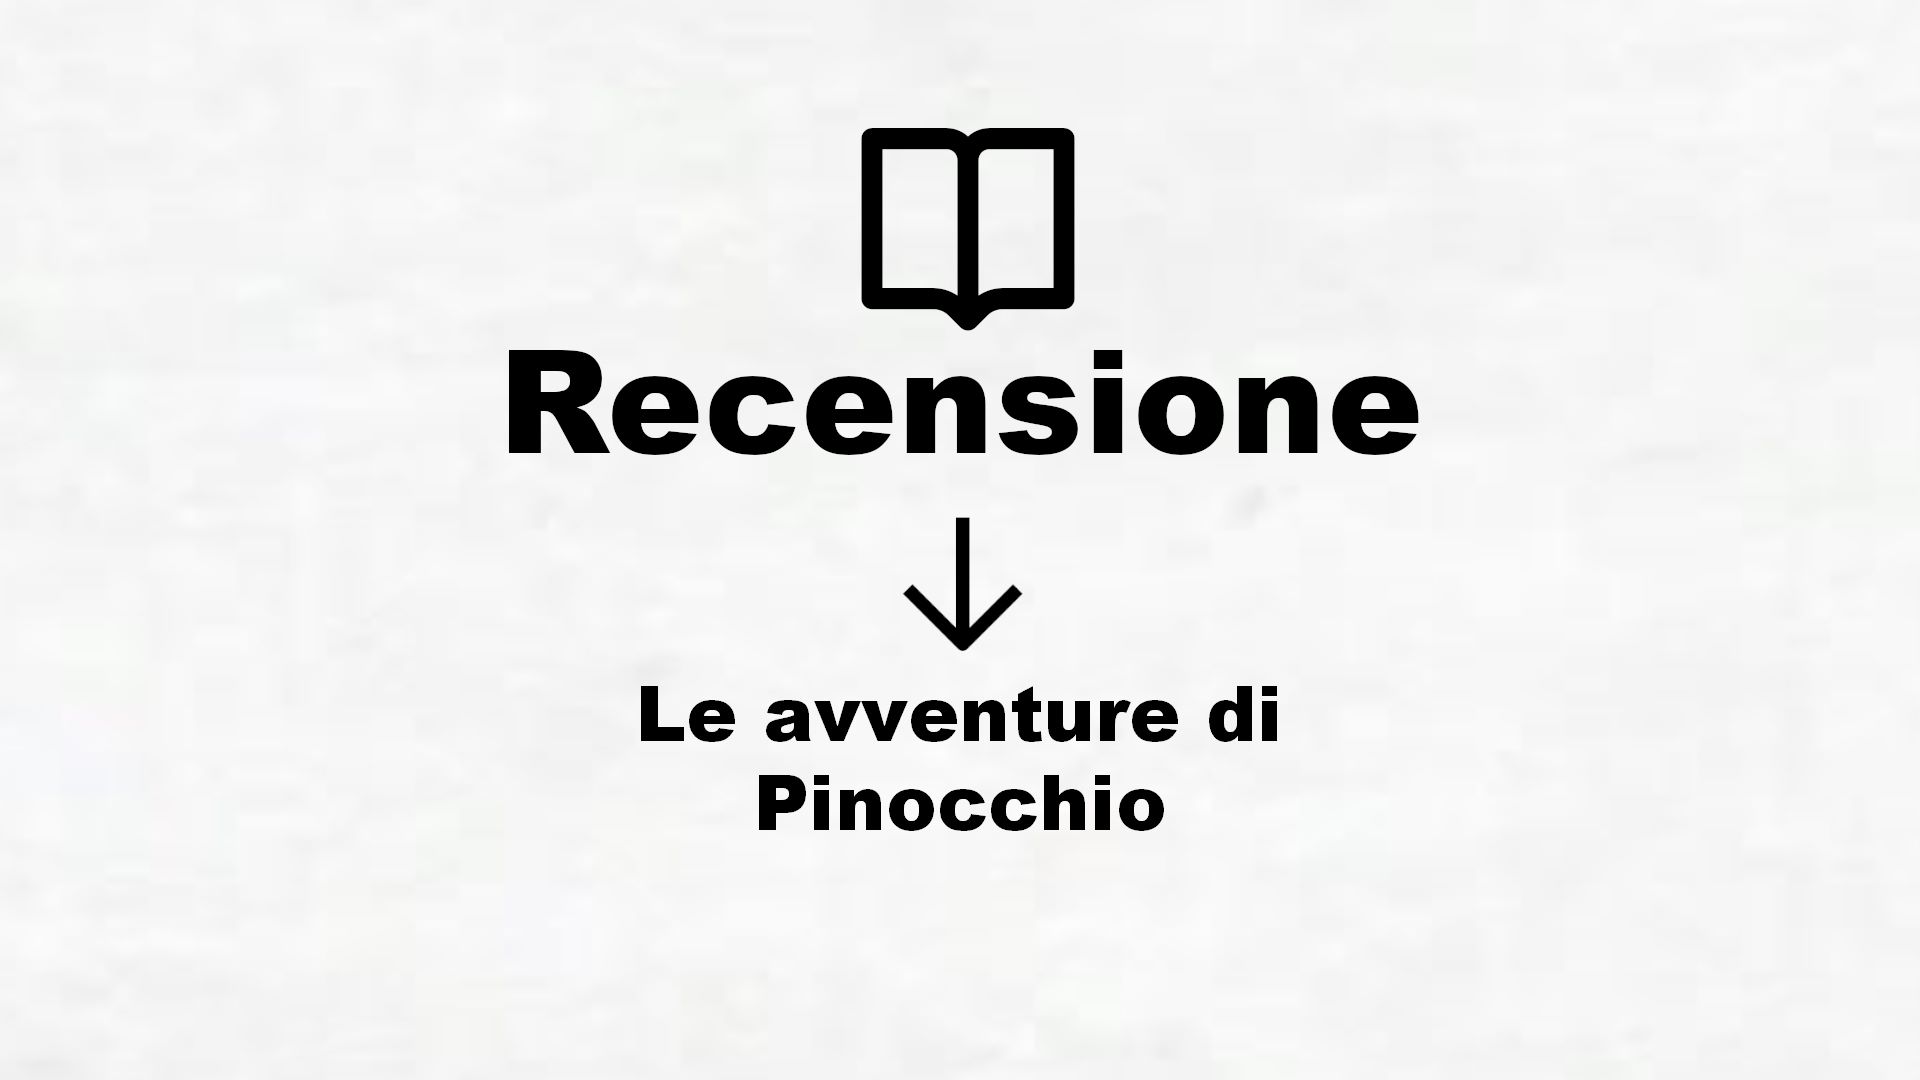 Le avventure di Pinocchio – Recensione Libro